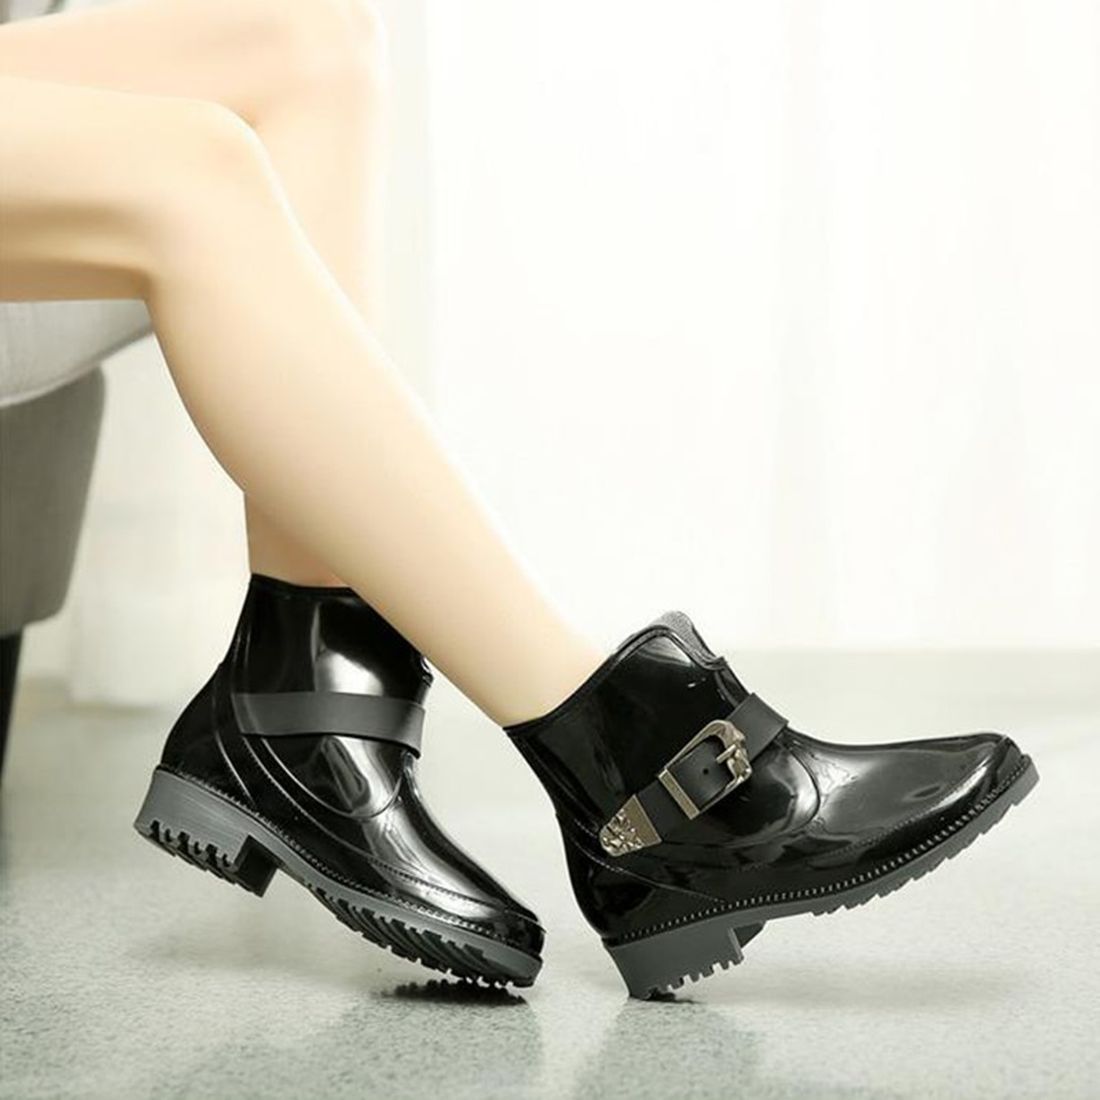 Women's Rubber Waterproof Rain Ankle Boots